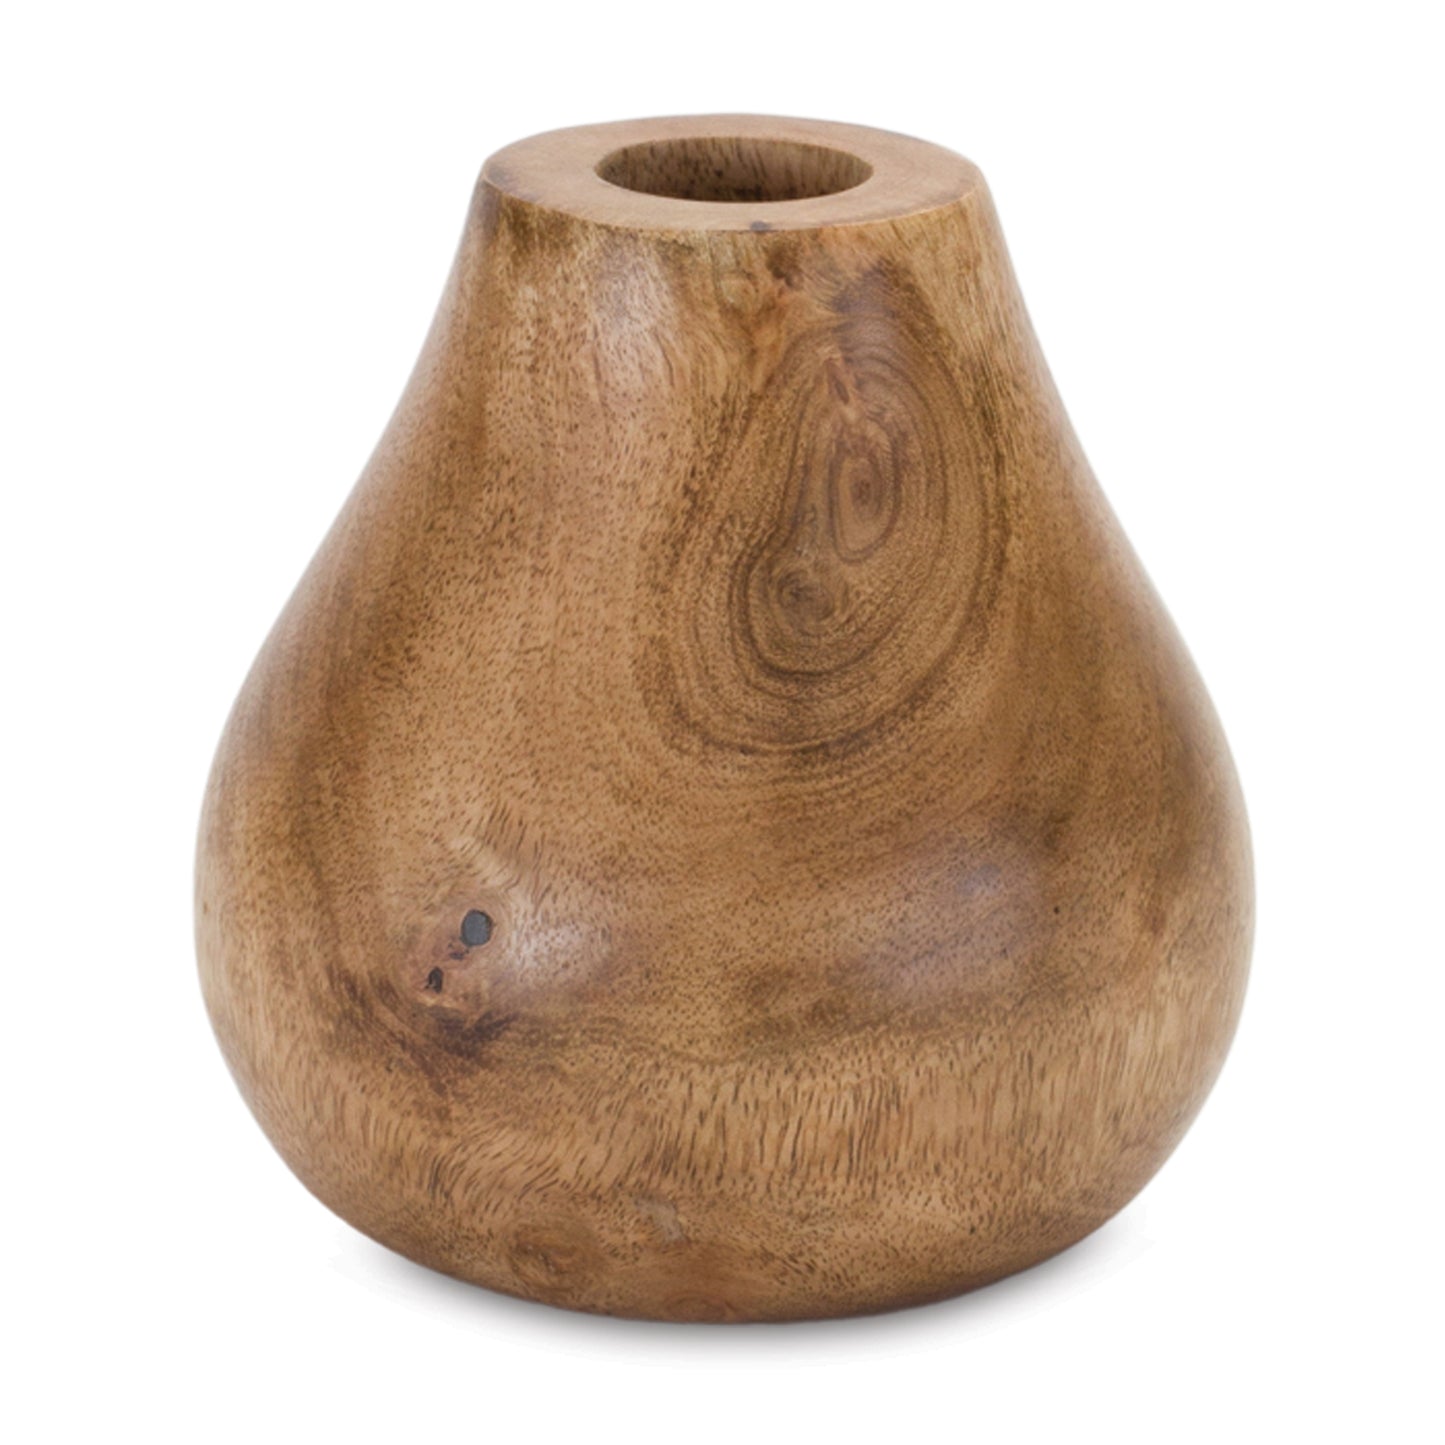 Set of 3 Wood Bud Vases